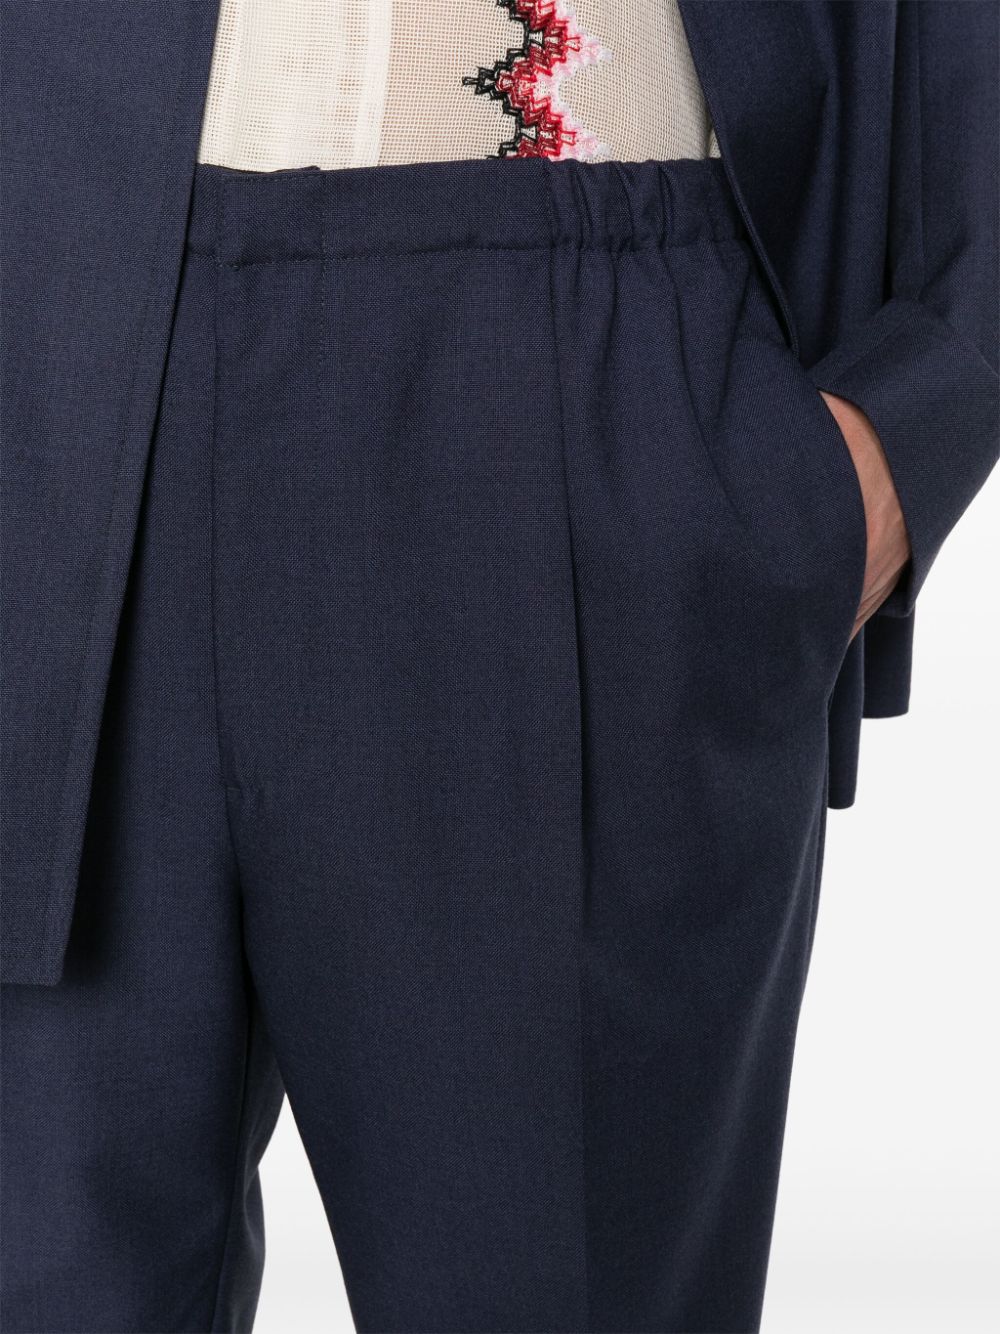 Pantaloni in lana con dettaglio plissettatura<br><br><br>